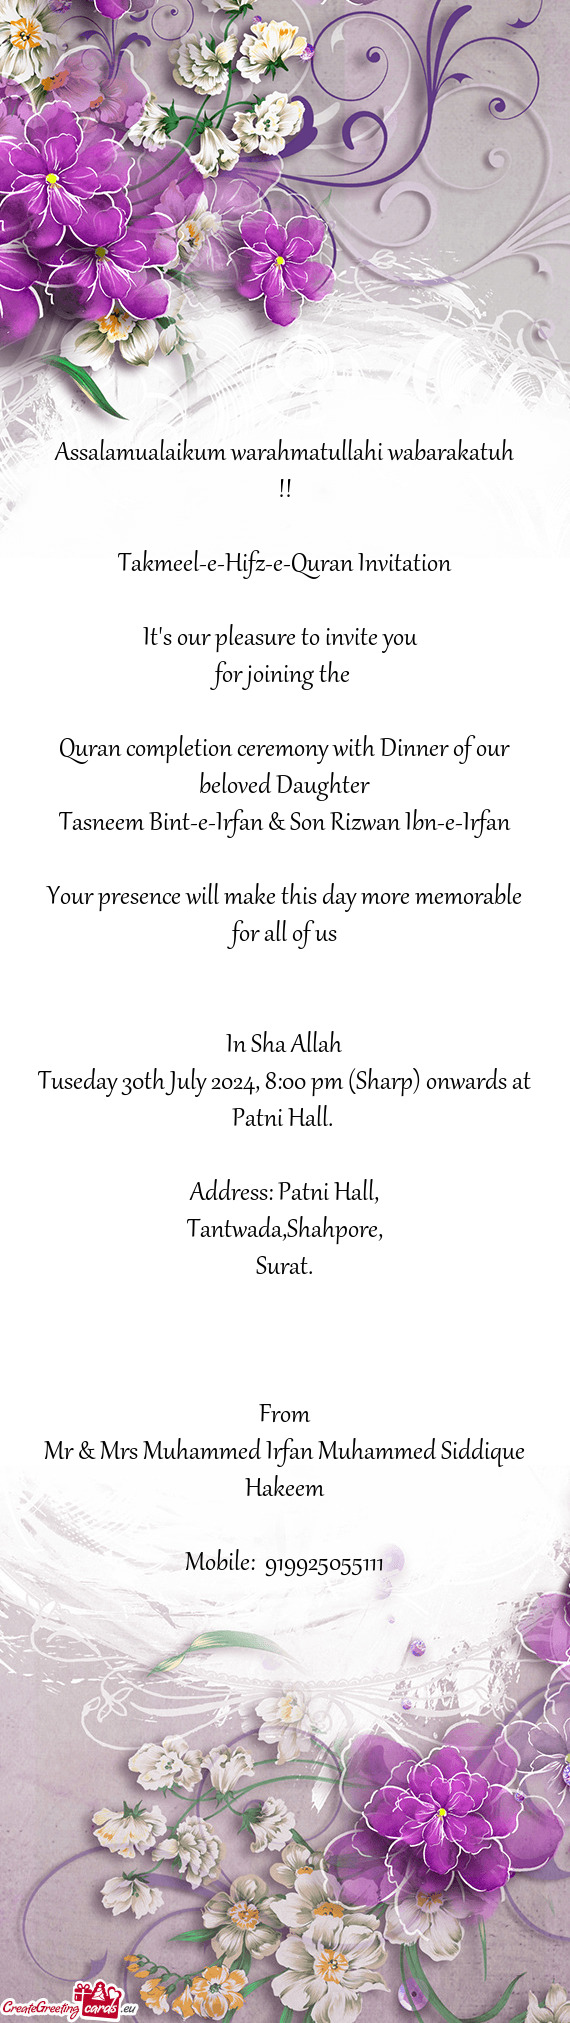 Takmeel-e-Hifz-e-Quran Invitation